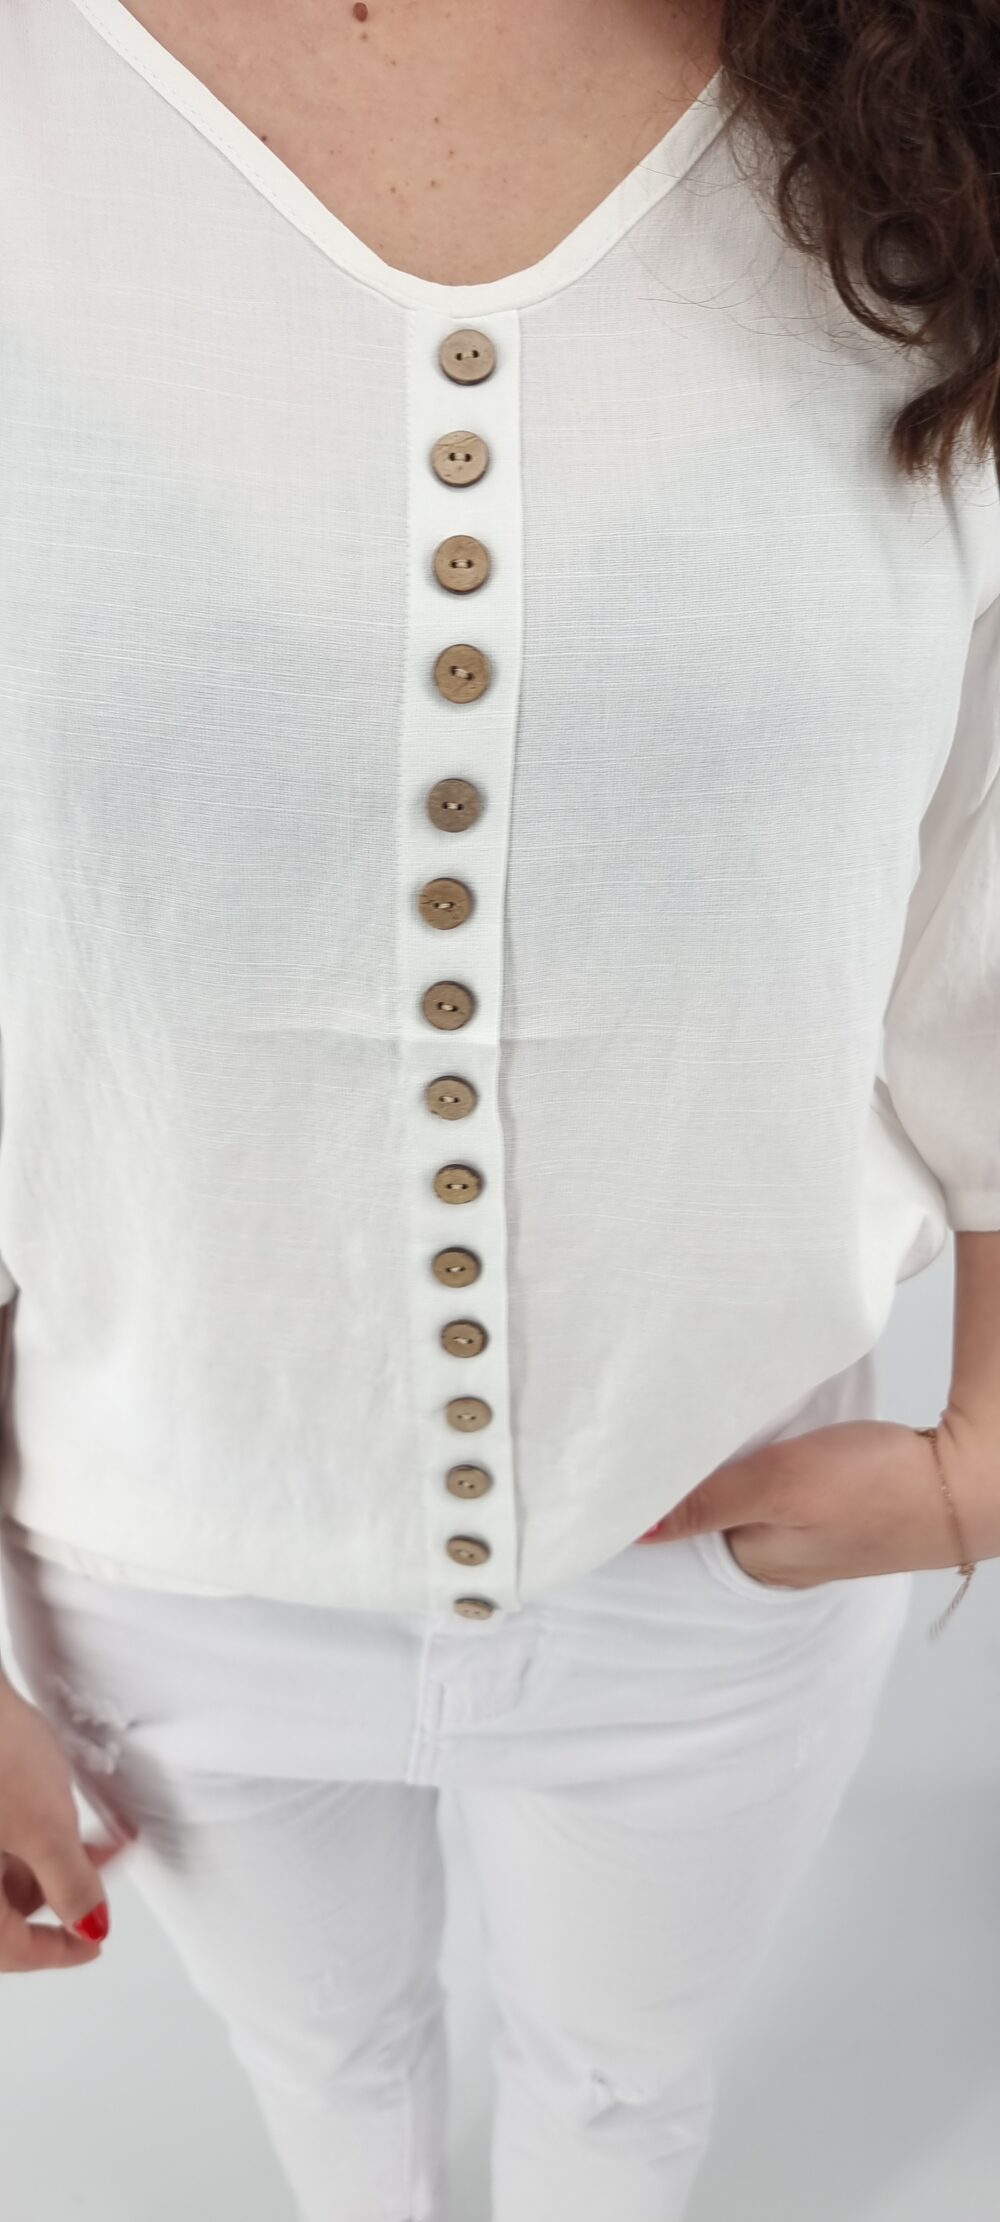 Μπλούζα με μπεζ διακοσμητικά κουμπάκια άσπρο